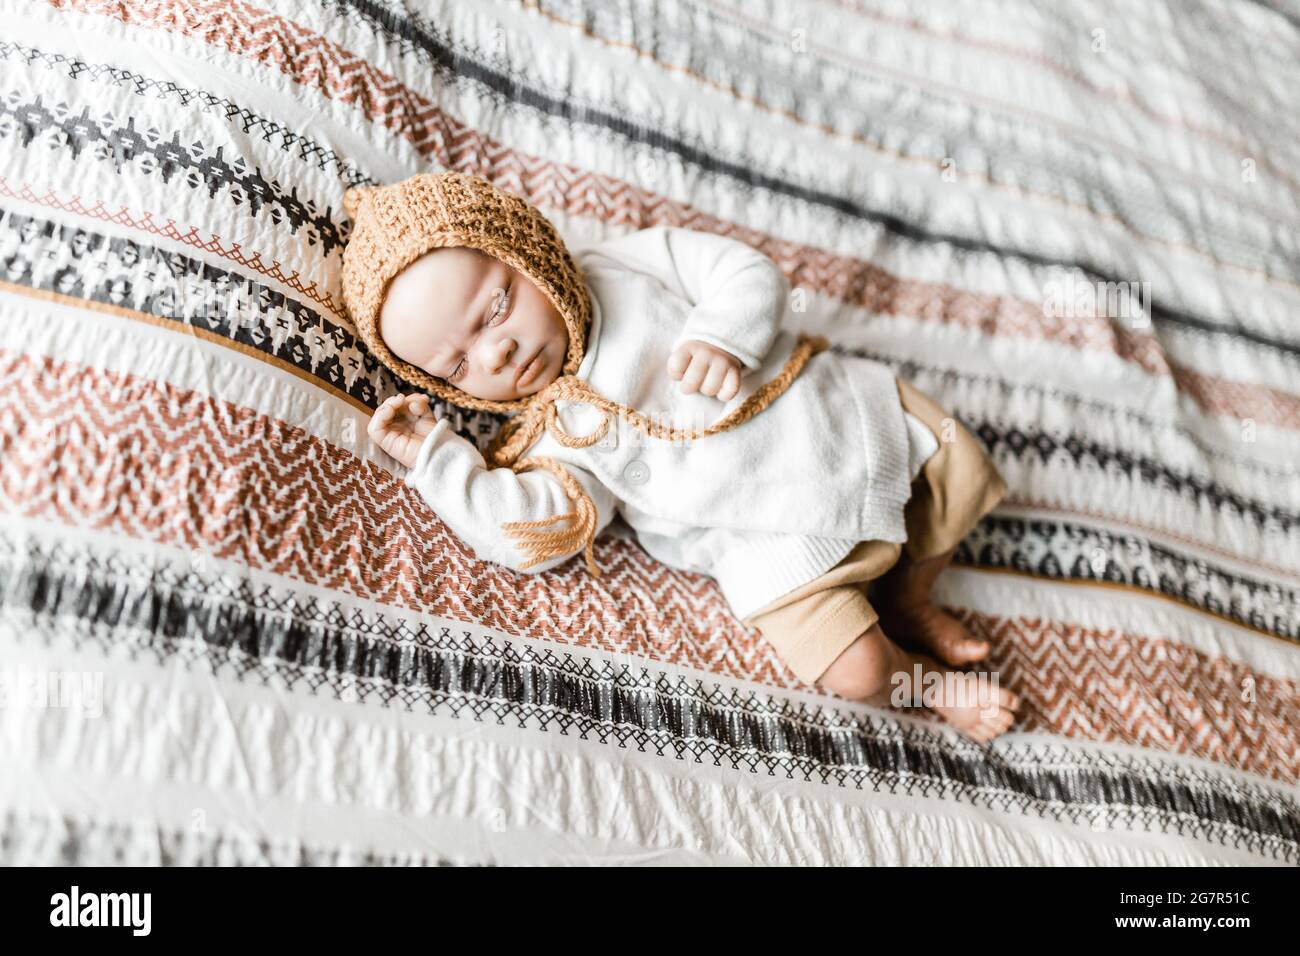 Bambola del bambino rinata sdraiata su un letto con una copertura del dovet modellata che indossa un cofano, il rilascio del modello non è richiesto poiché il bambino è una bambola realistica Foto Stock